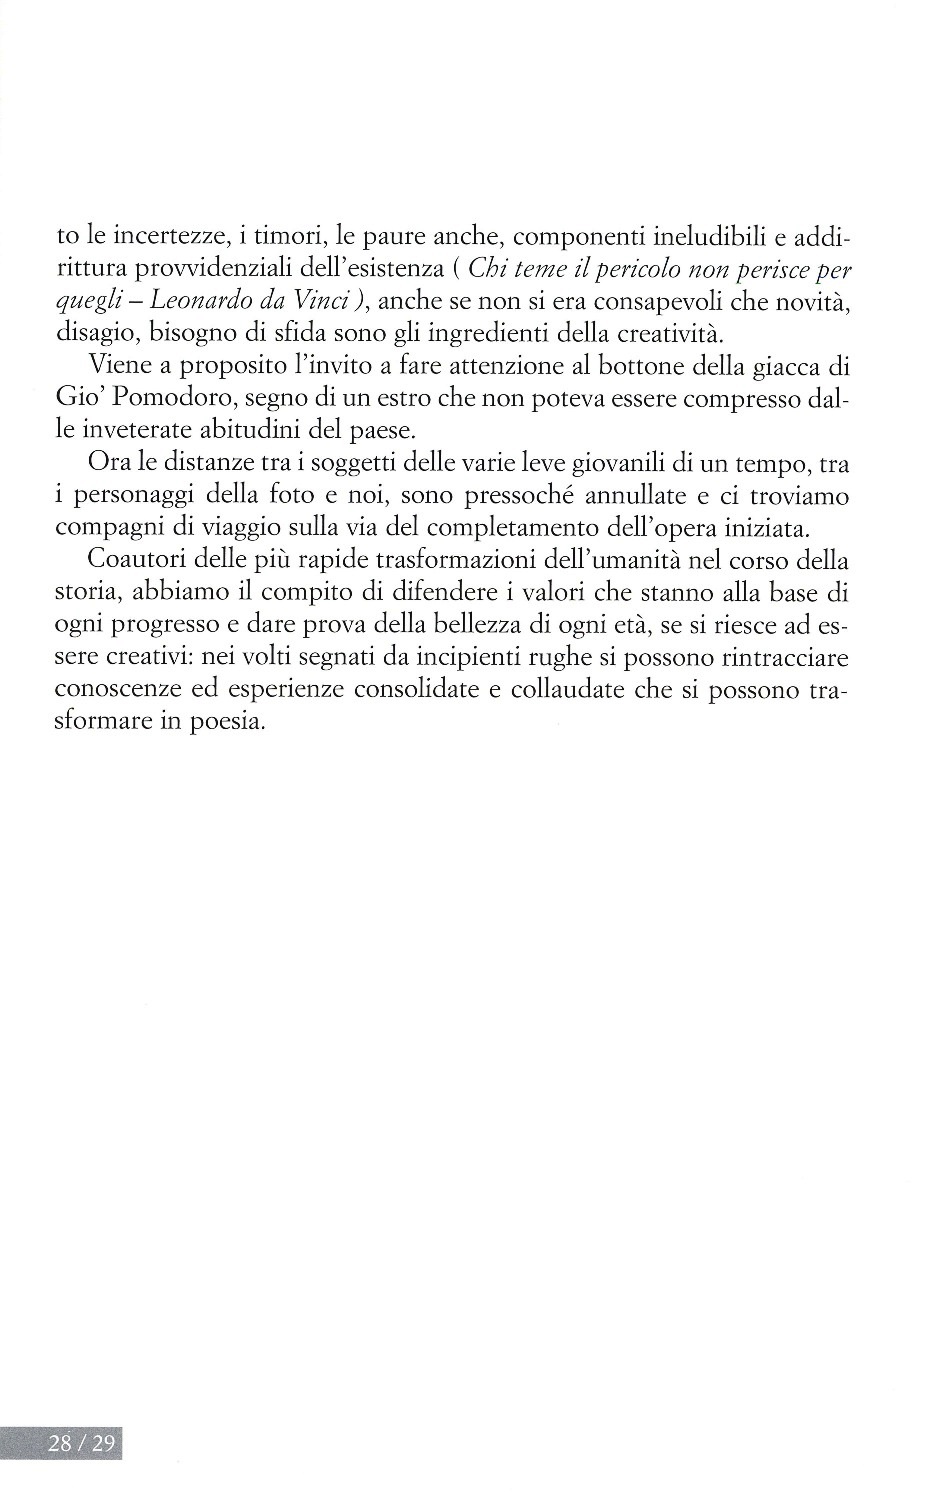 La torr i arduna tutti 2009 p.028